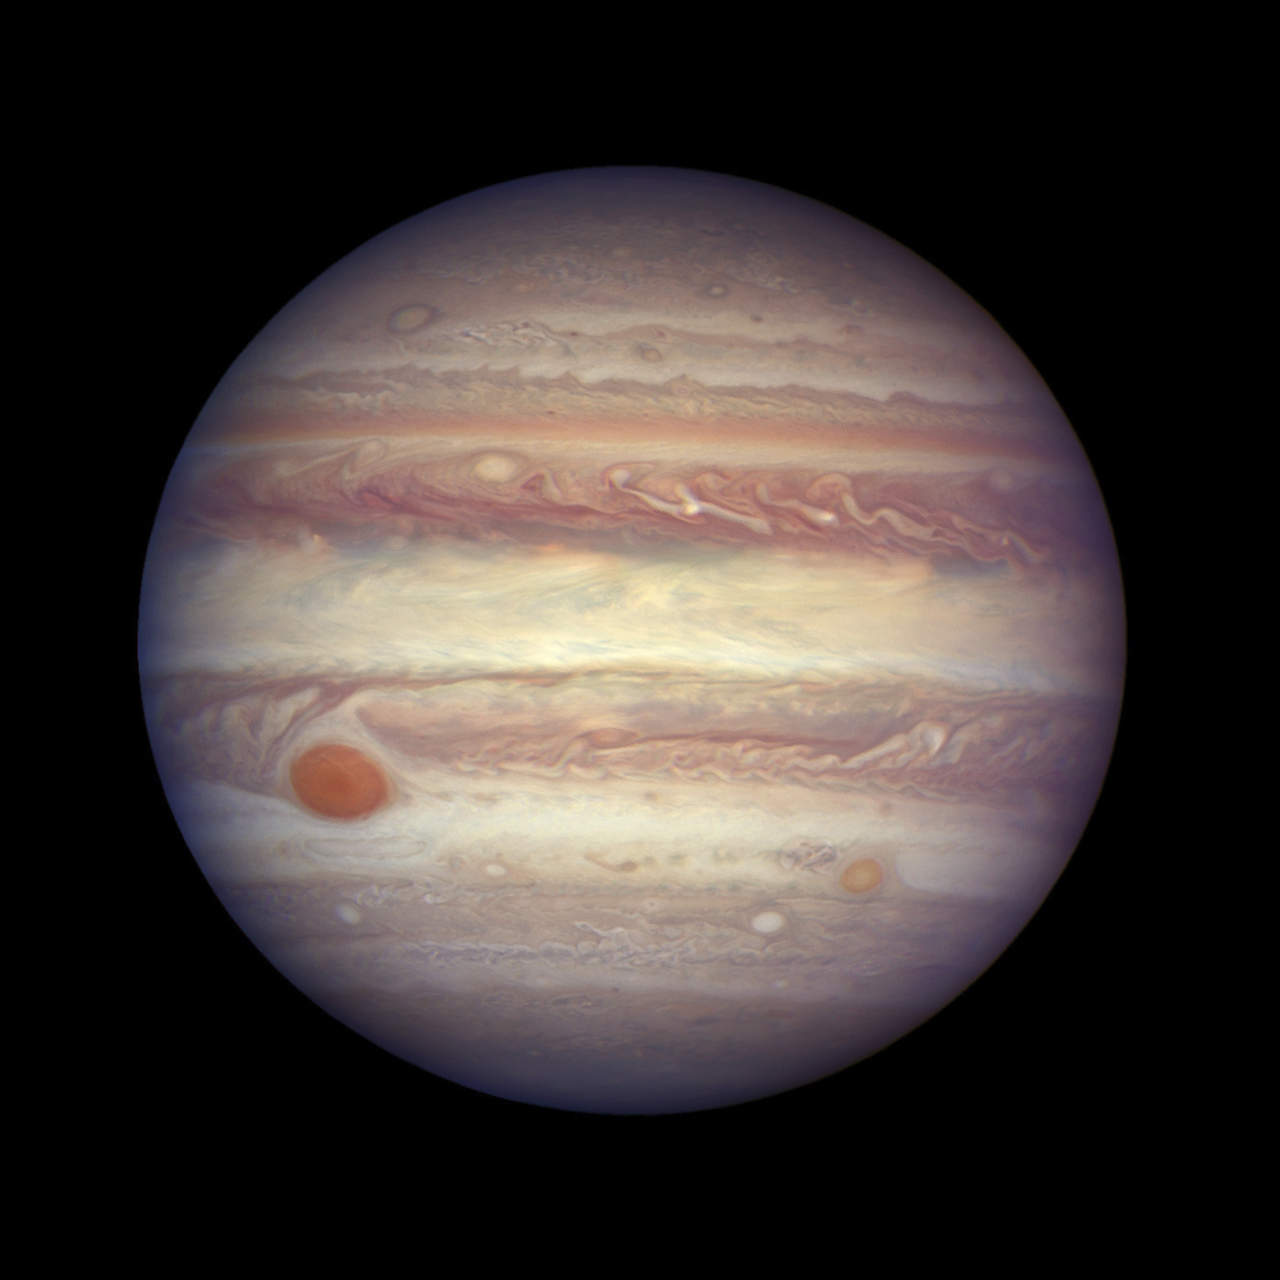 La NASA enviara el telescopio espacial James Webb a que estudie la gran mancha roja de Júpiter (ARCHIVO)